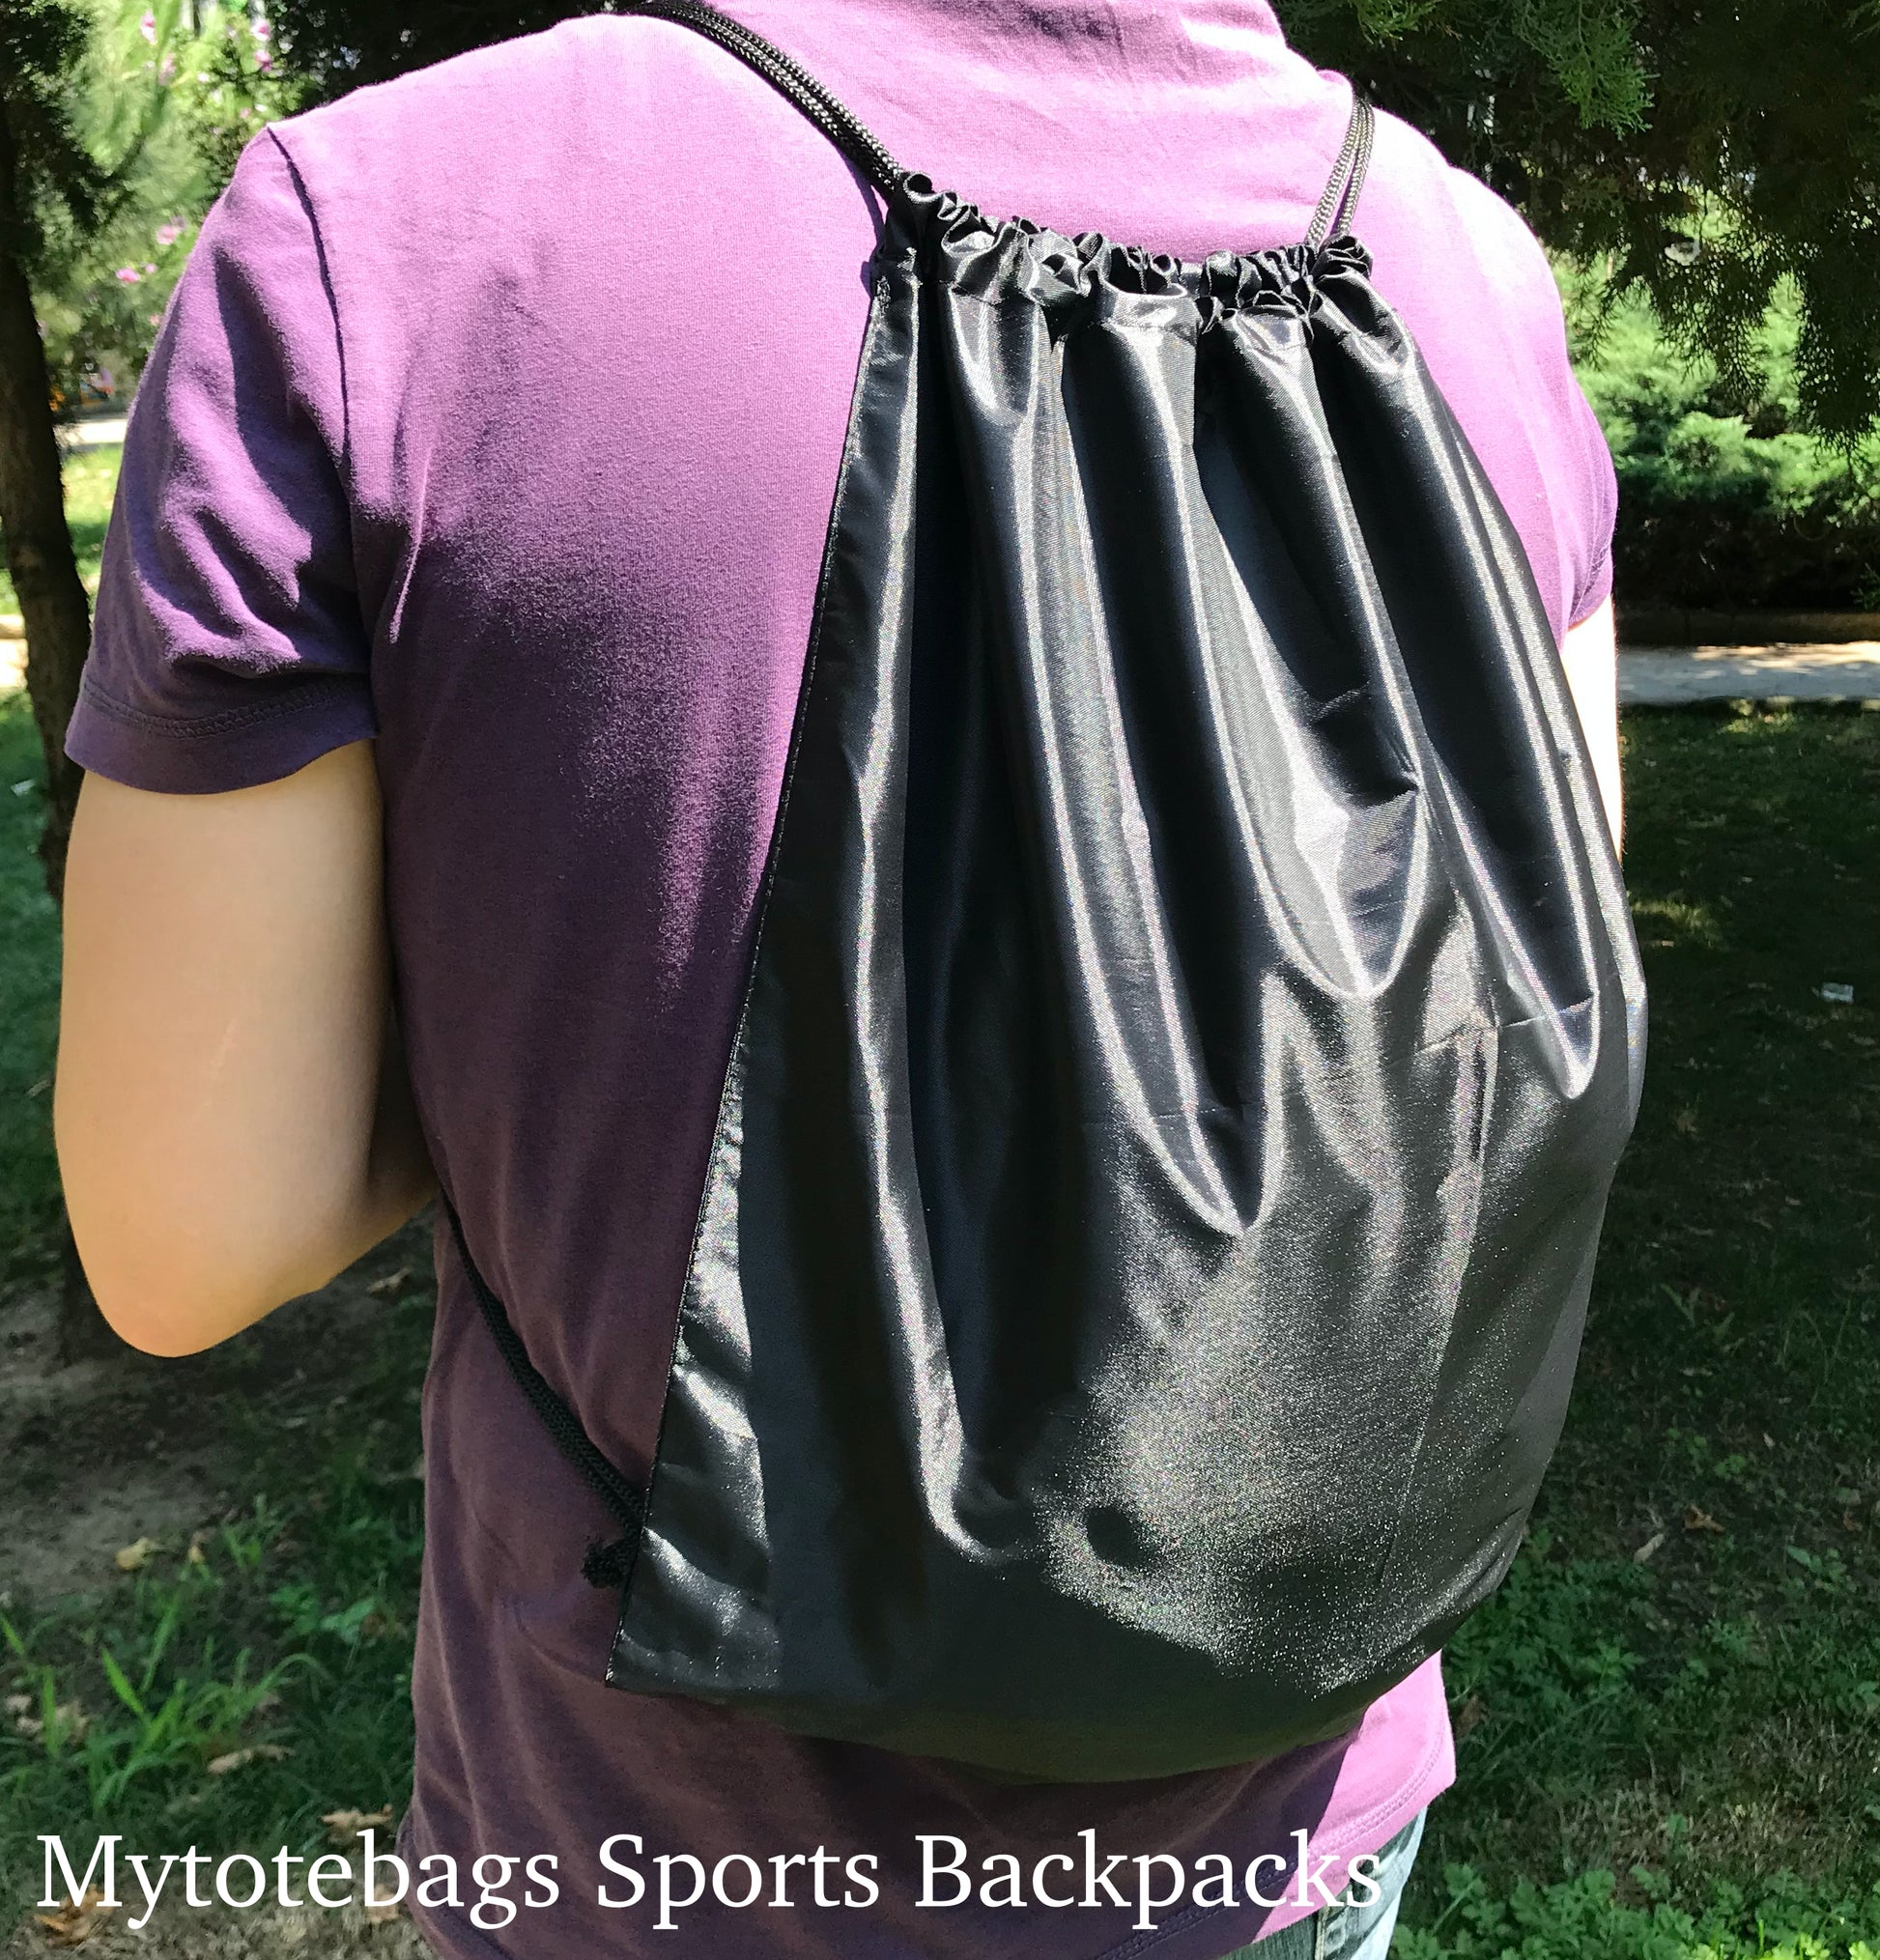 Mytotebags Wholesale Economy Polyester Sports Drawstring Backpack, Medium Size